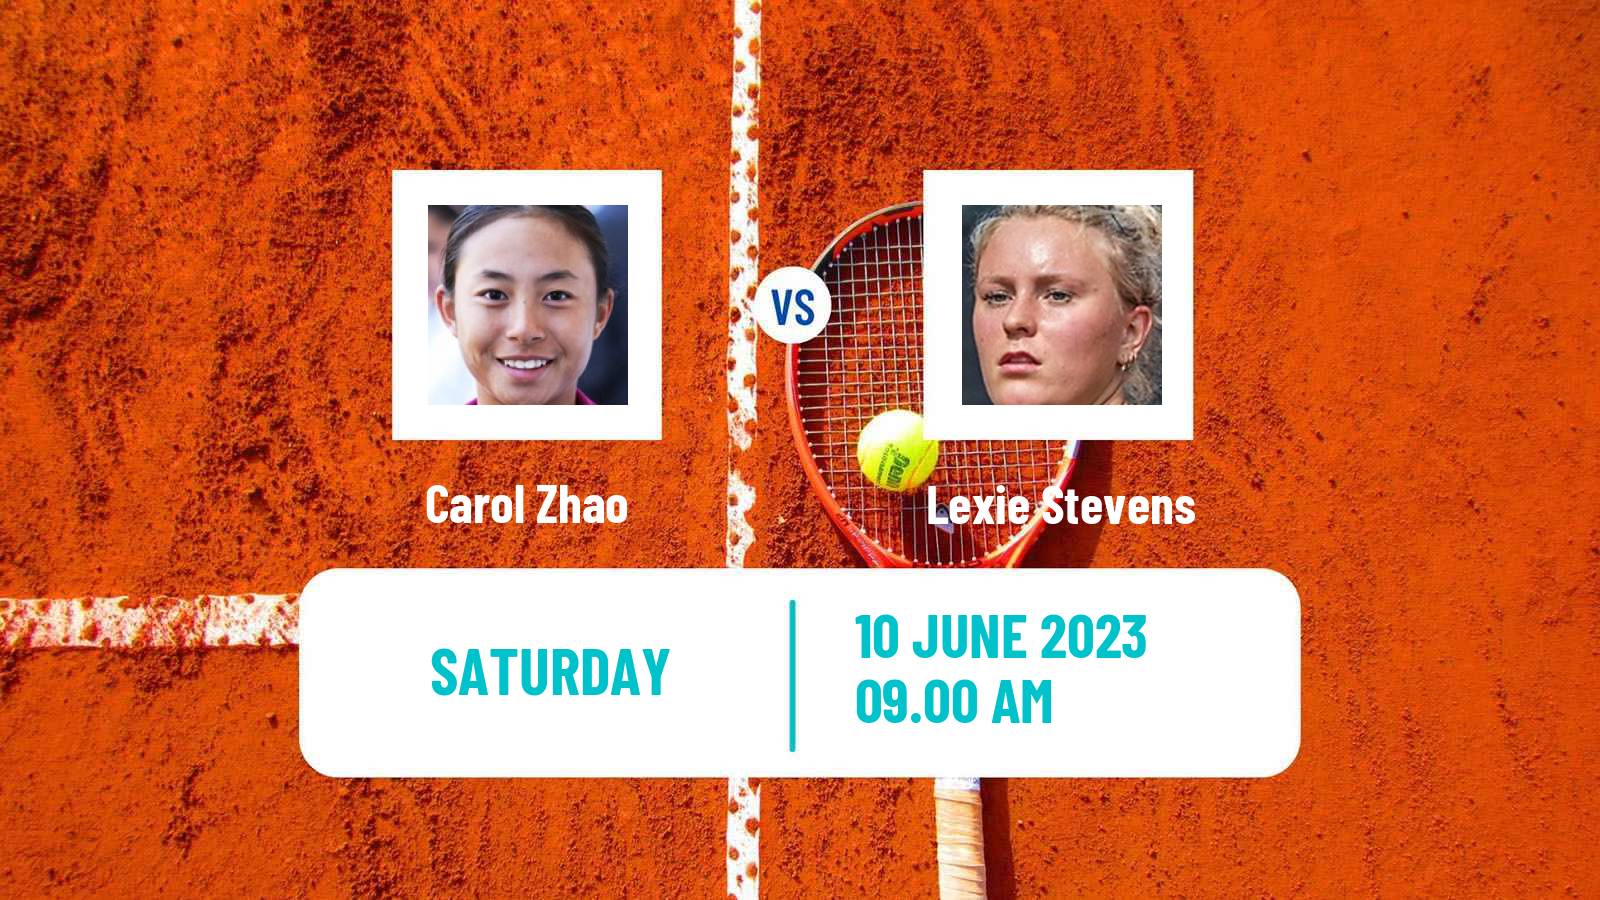 Tennis WTA Hertogenbosch Carol Zhao - Lexie Stevens